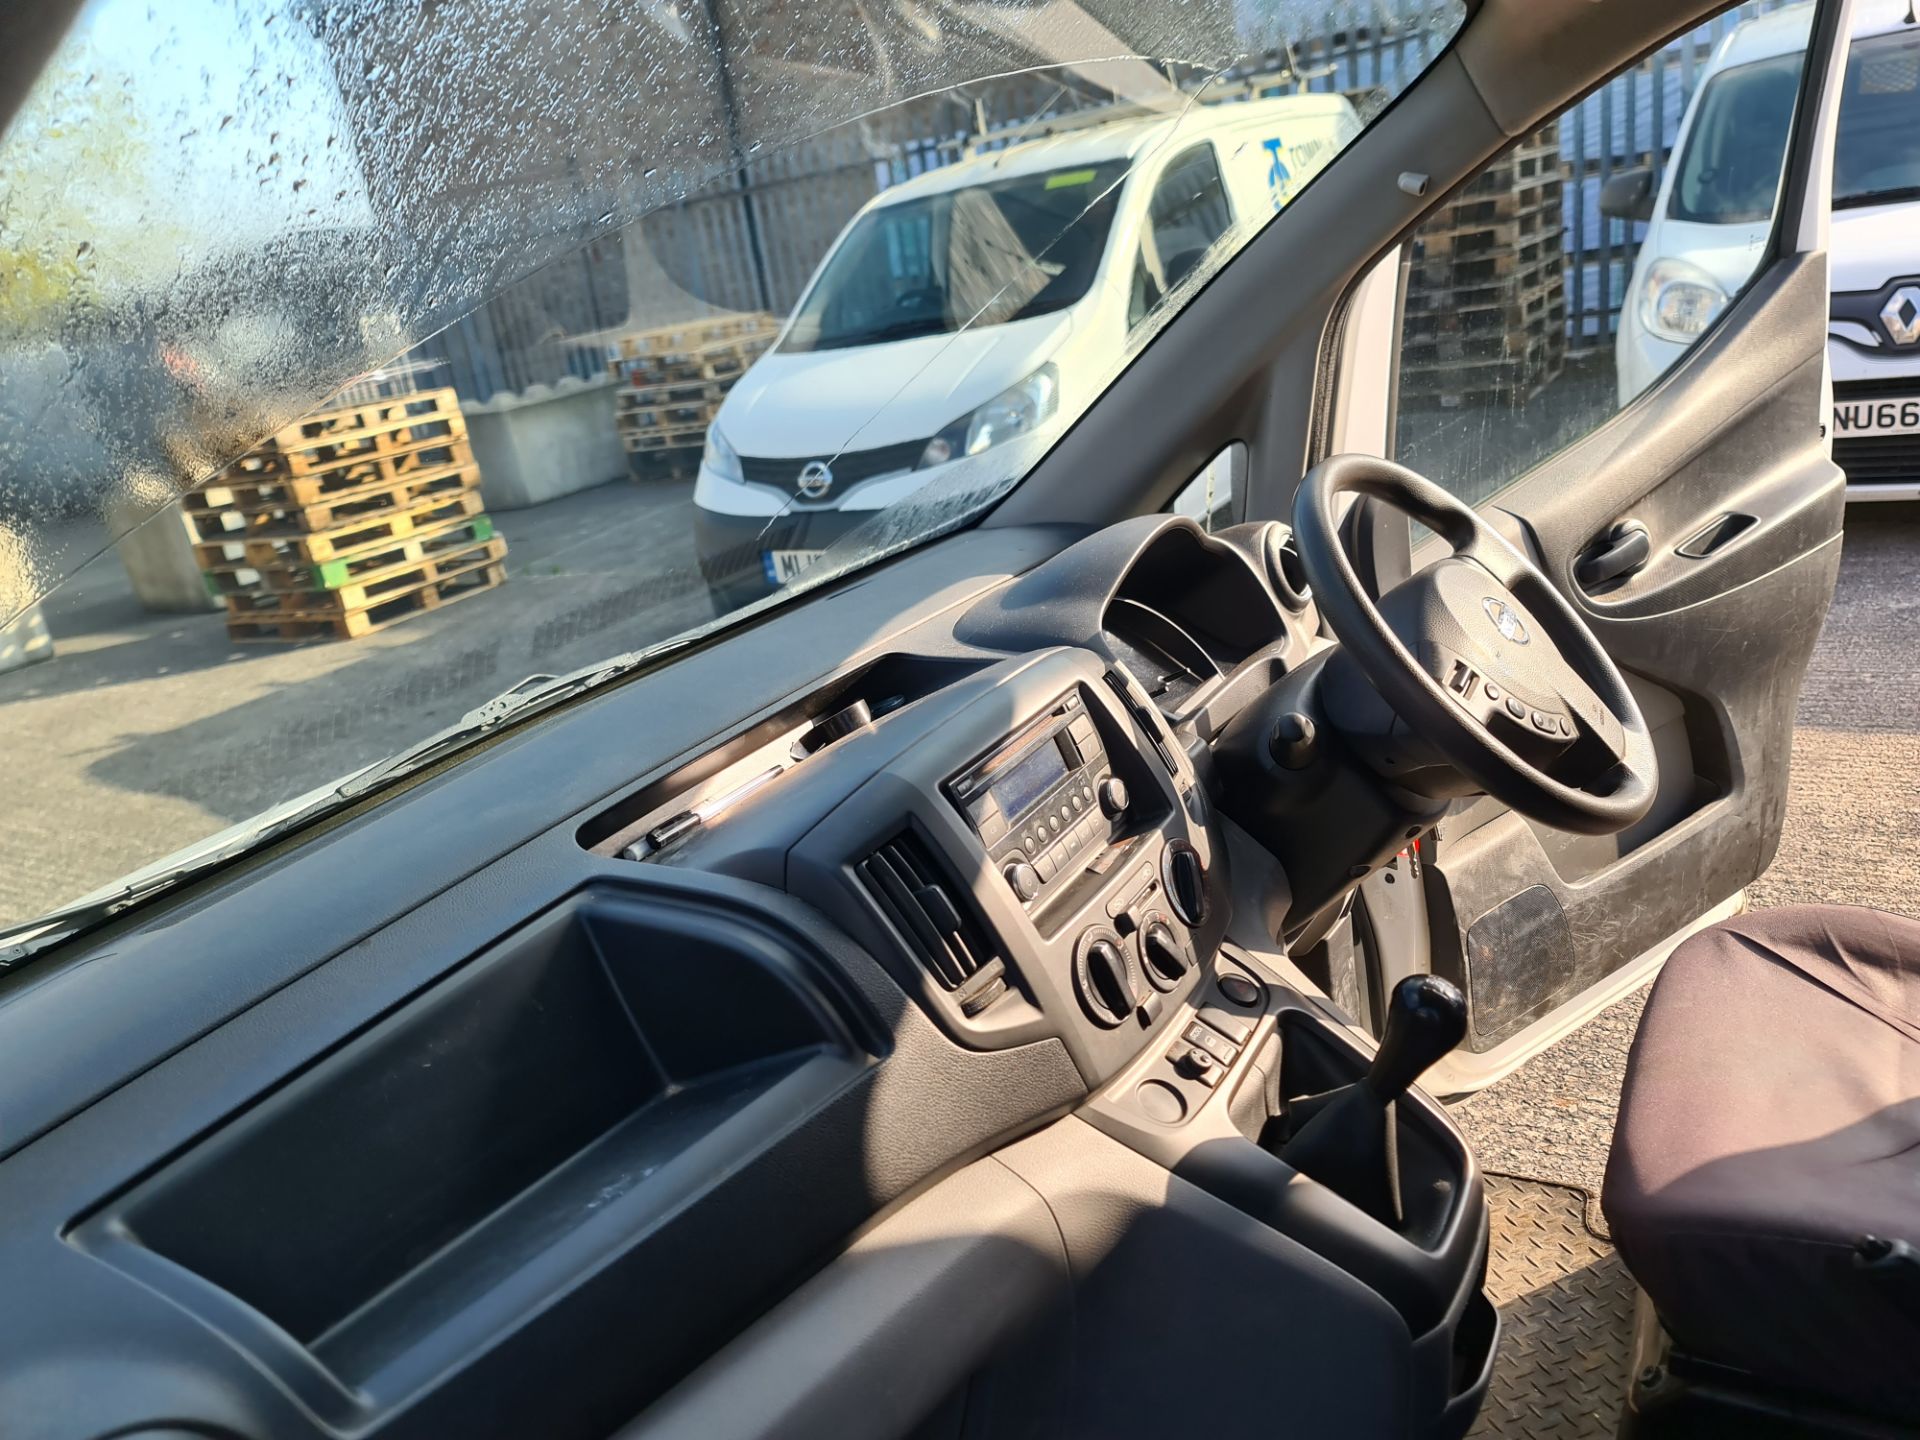 2018 Nissan NV200 Acenta DCI car derived van - Image 76 of 93